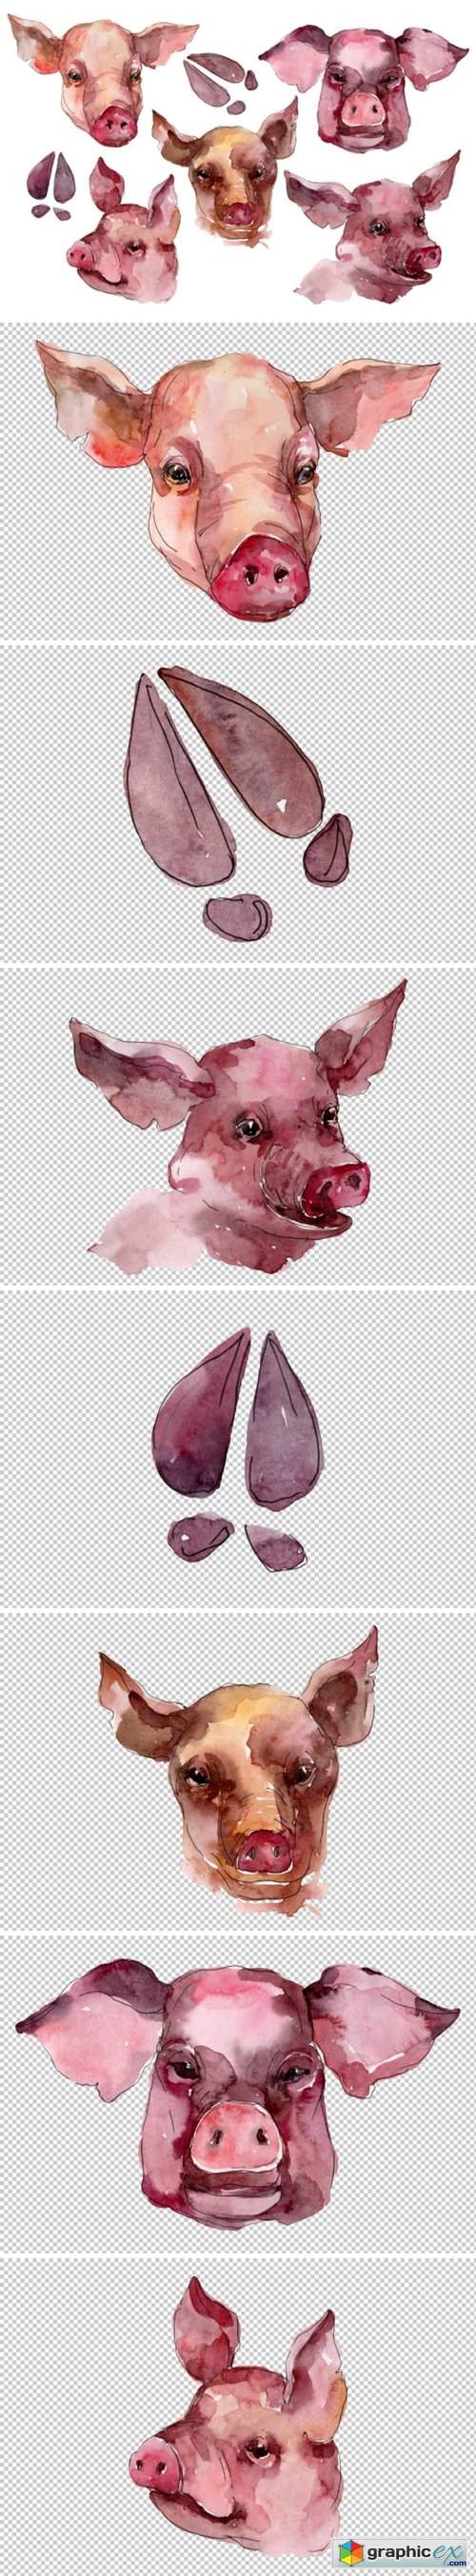 Farm animals: pig head Watercolor png